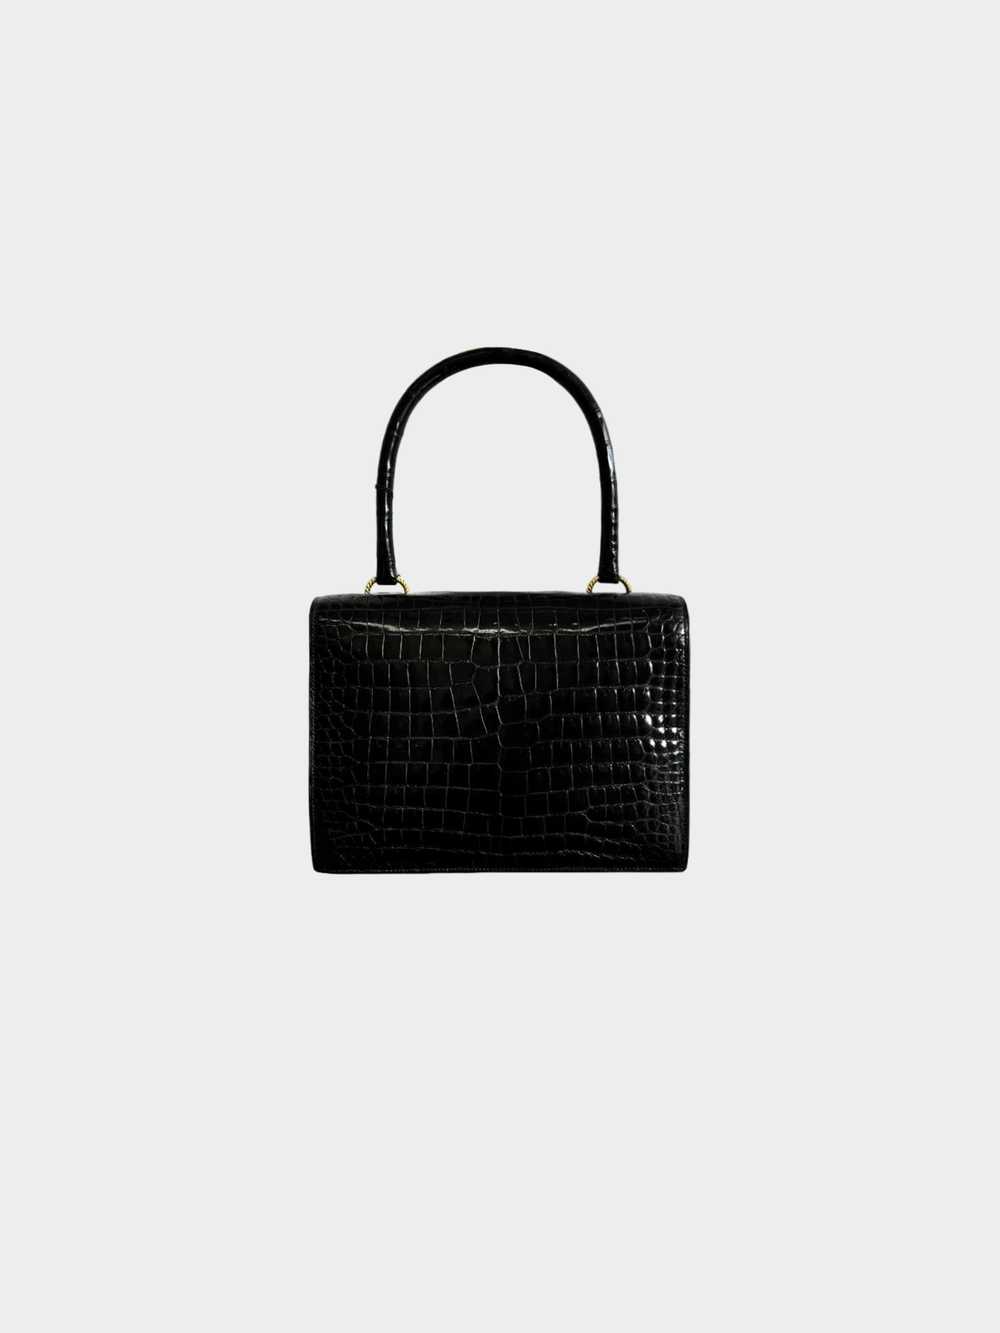 Hermès 1960s Black Sac Vasco Handbag - image 2